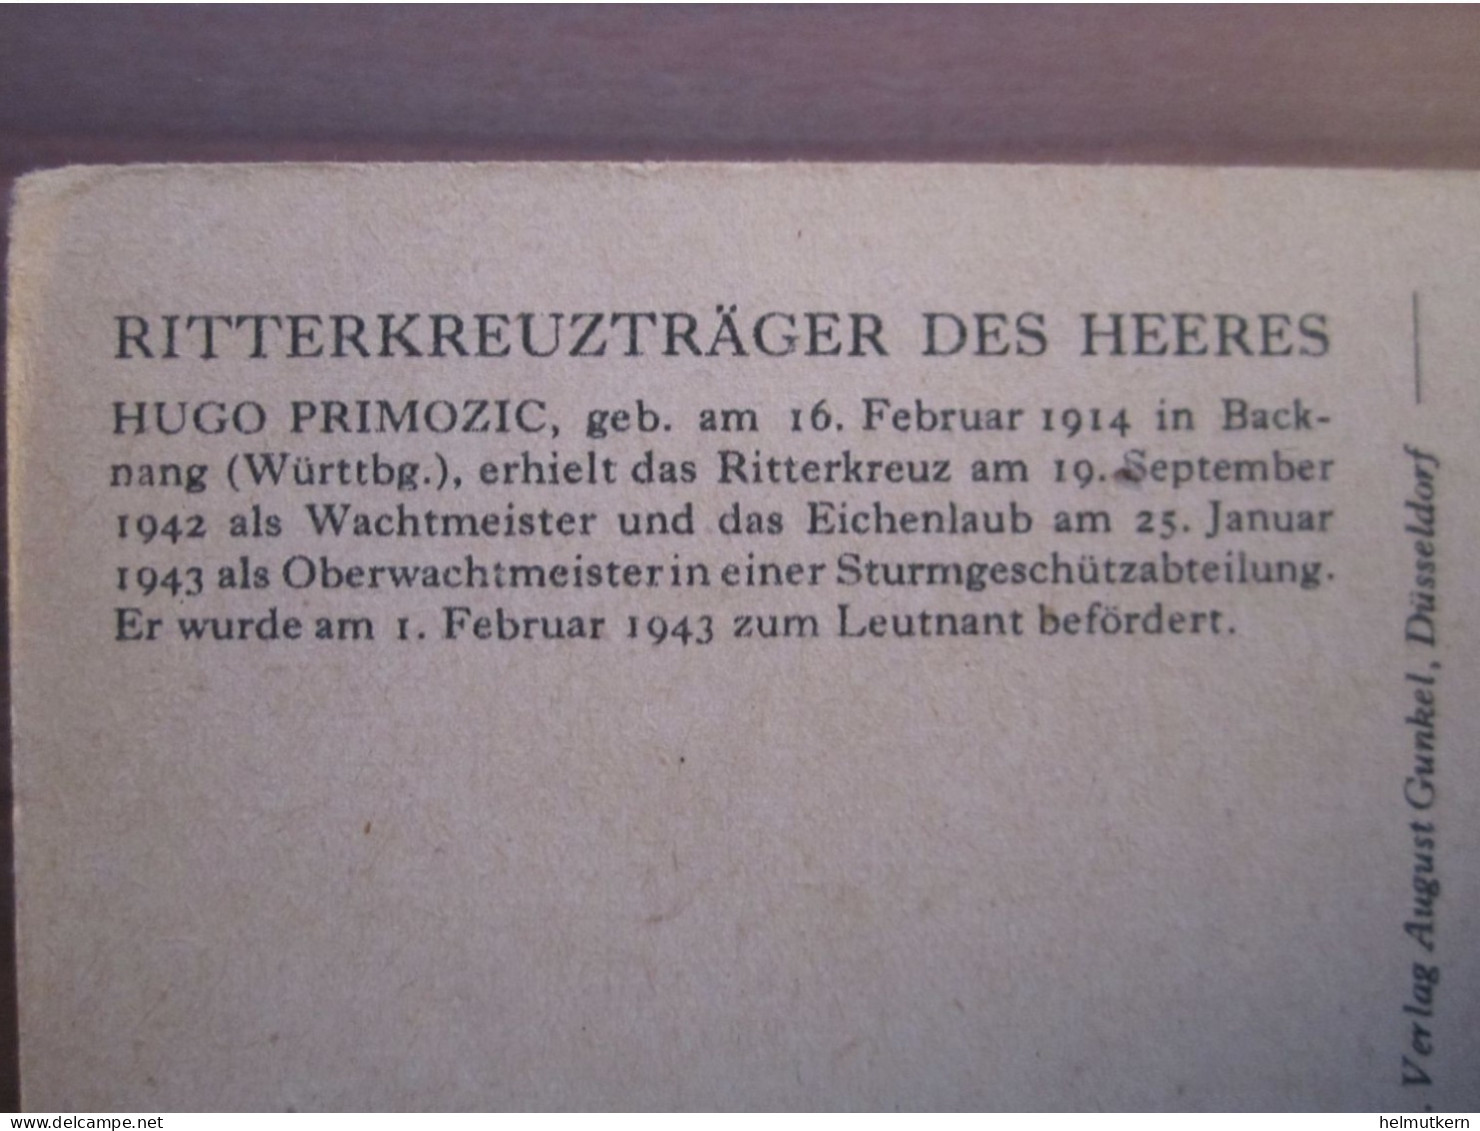 Ritterkreuzträger - Hugo Primozic - Zeichnung Prof. O. Graf München - 1939-45